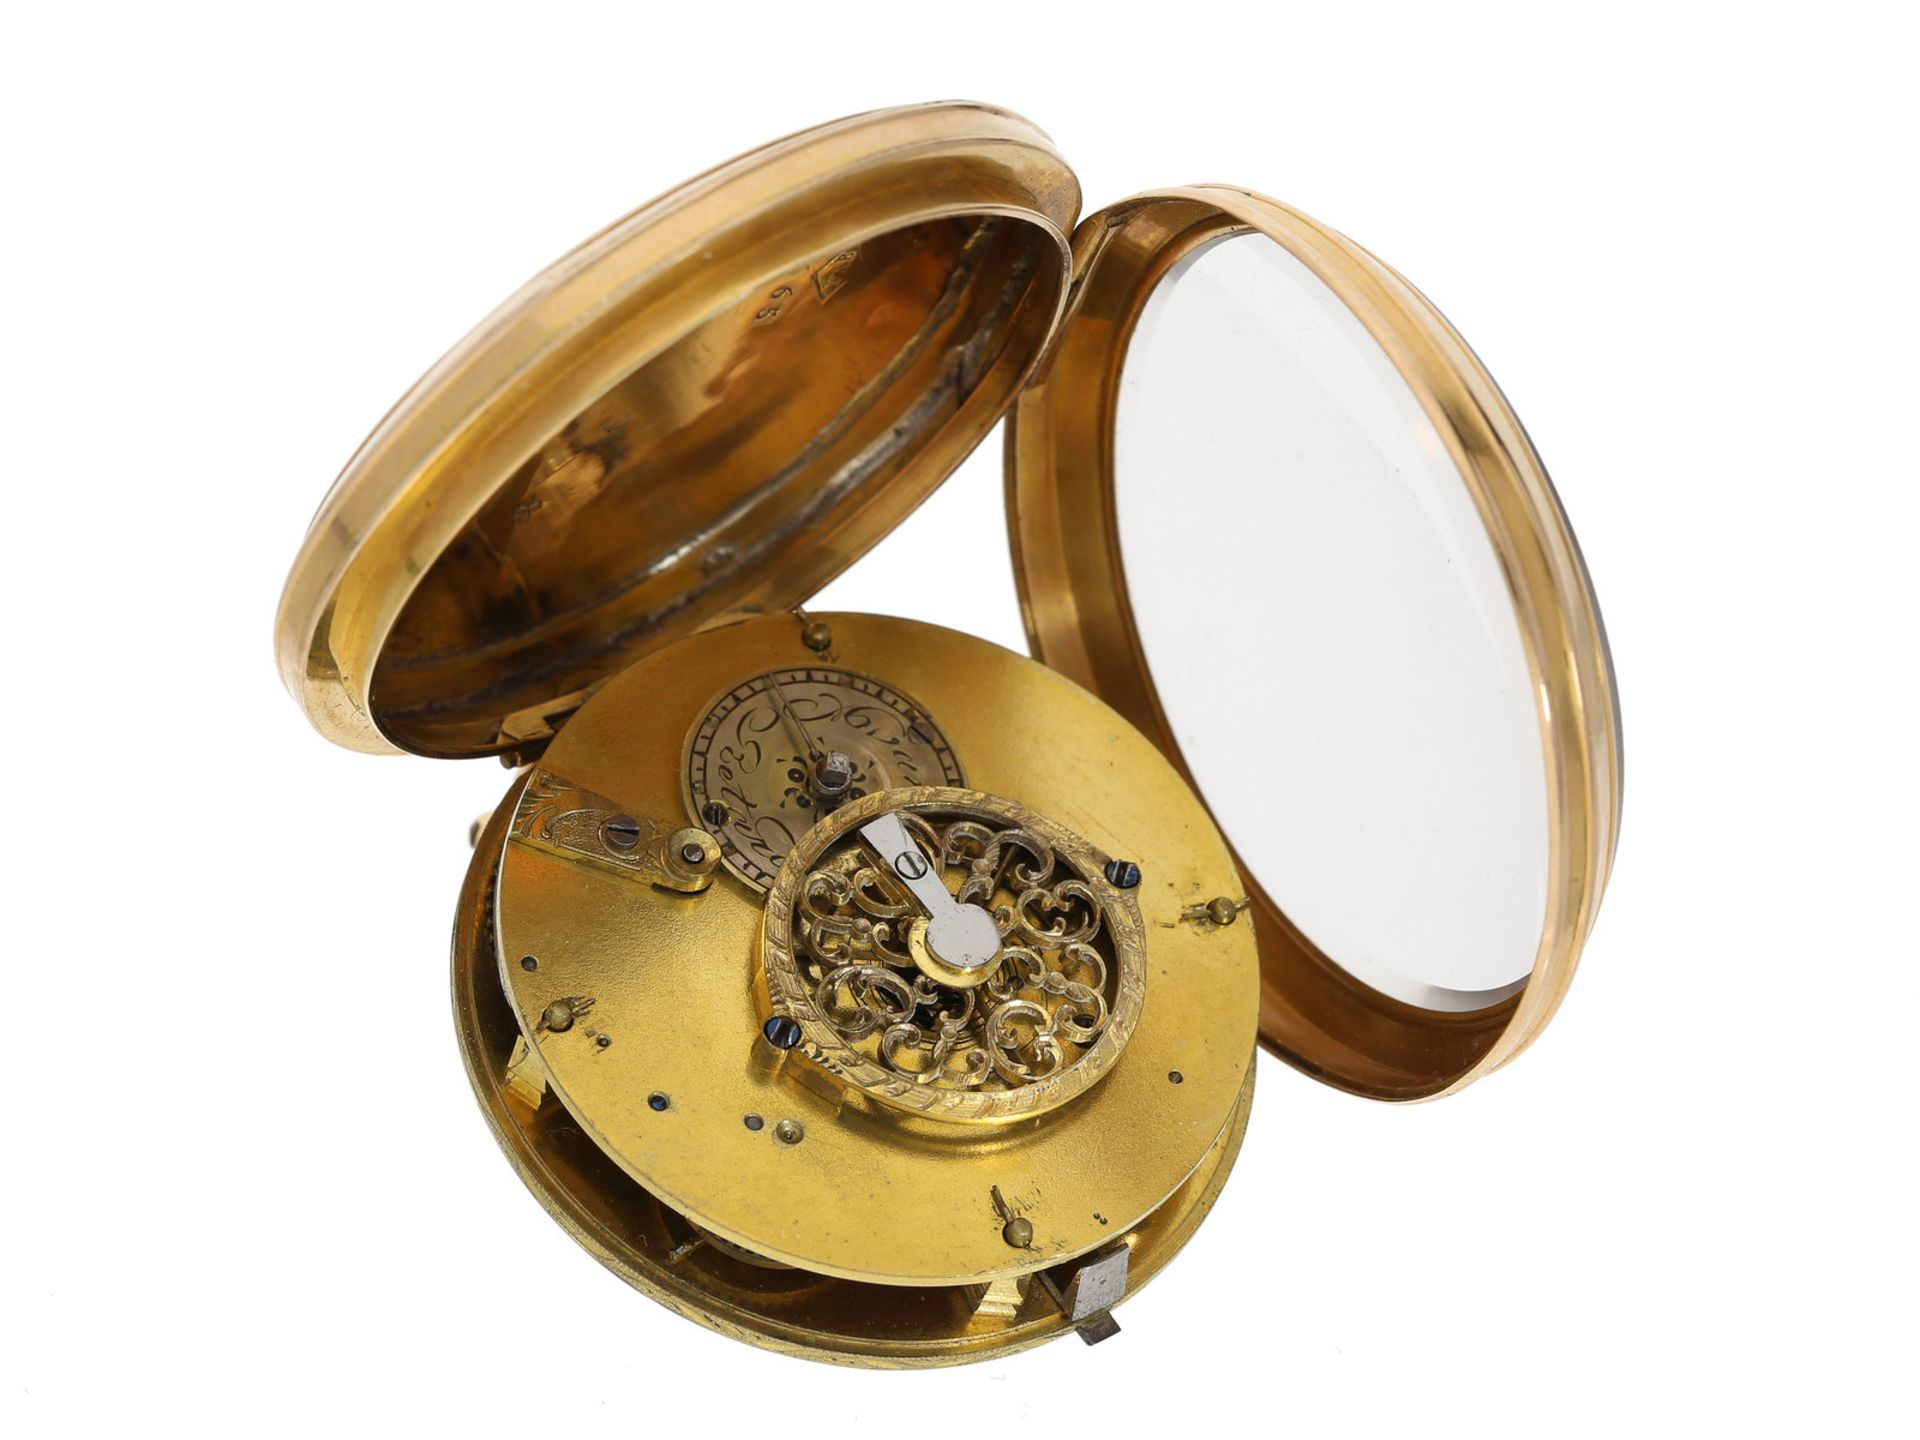 Taschenuhr: hochwertige Lepine, 18K Gold, ca. 1800 - Bild 2 aus 2